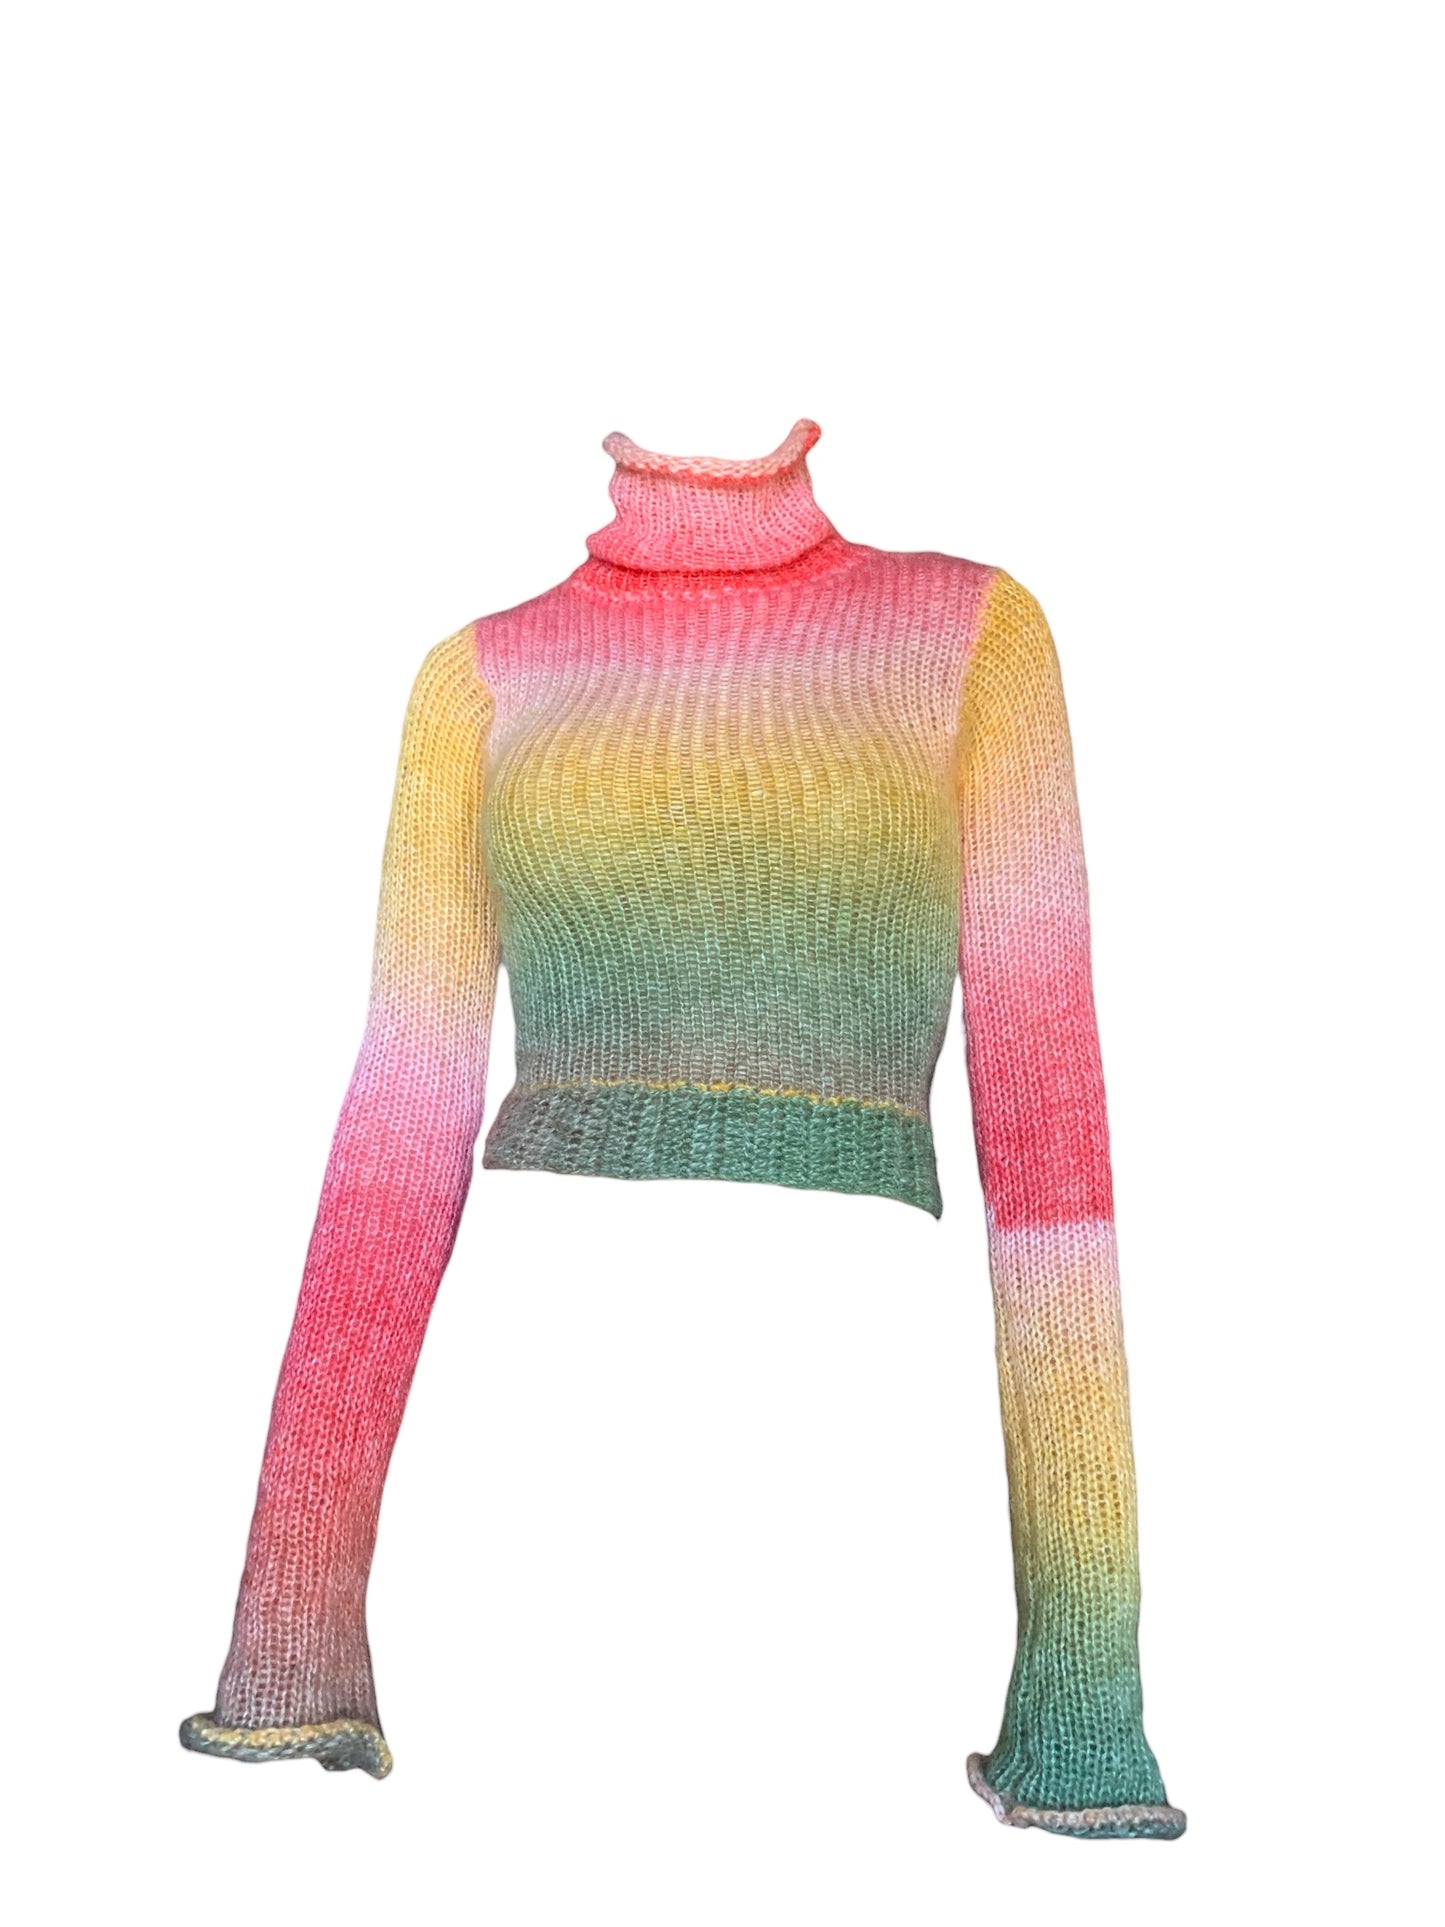 モヘアニットxかぎ針編みのセーター